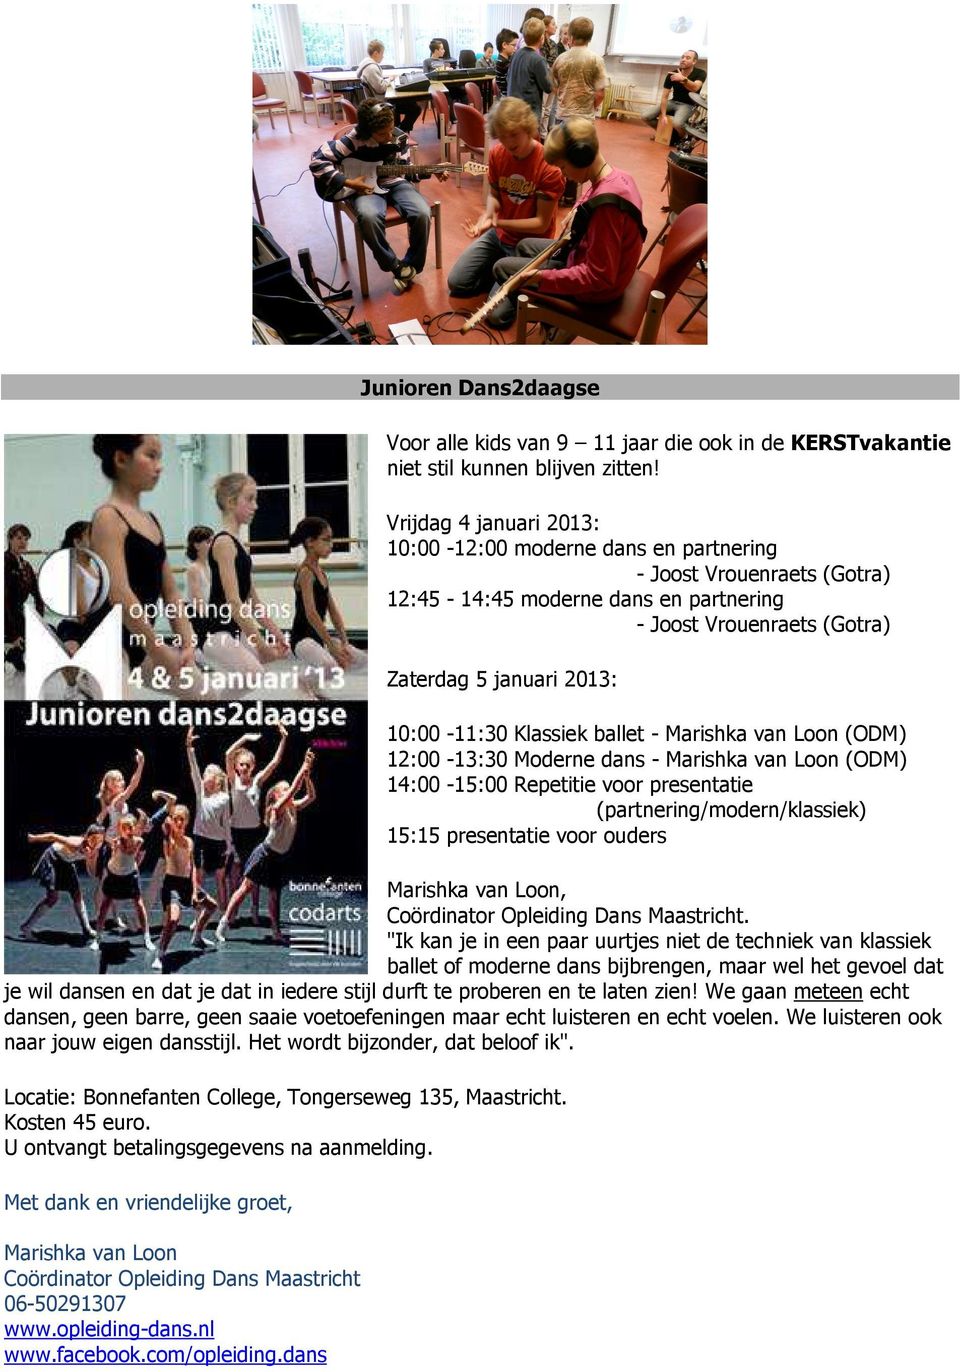 Klassiek ballet - Marishka van Loon (ODM) 12:00-13:30 Moderne dans - Marishka van Loon (ODM) 14:00-15:00 Repetitie voor presentatie (partnering/modern/klassiek) 15:15 presentatie voor ouders Marishka